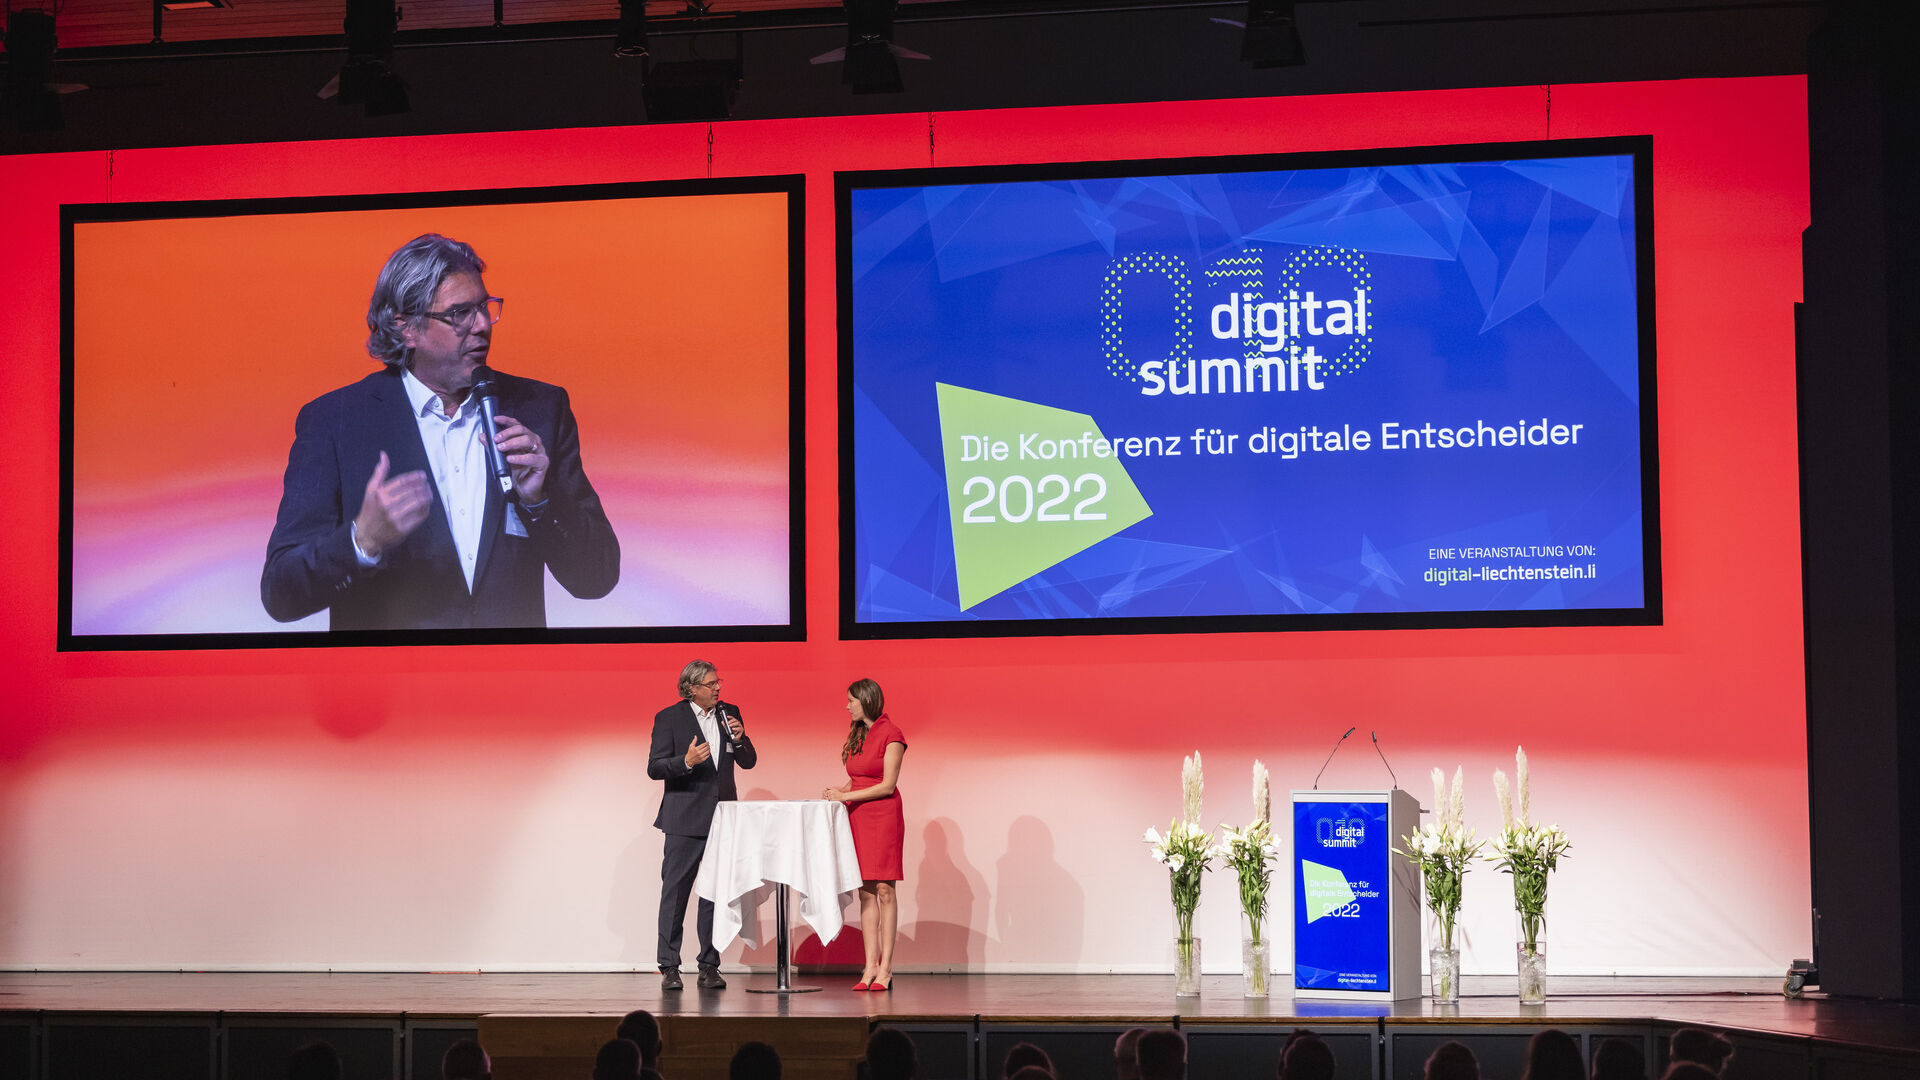 Vydanie podujatia „Digitálny samit“ v roku 2022 vo Vaduze